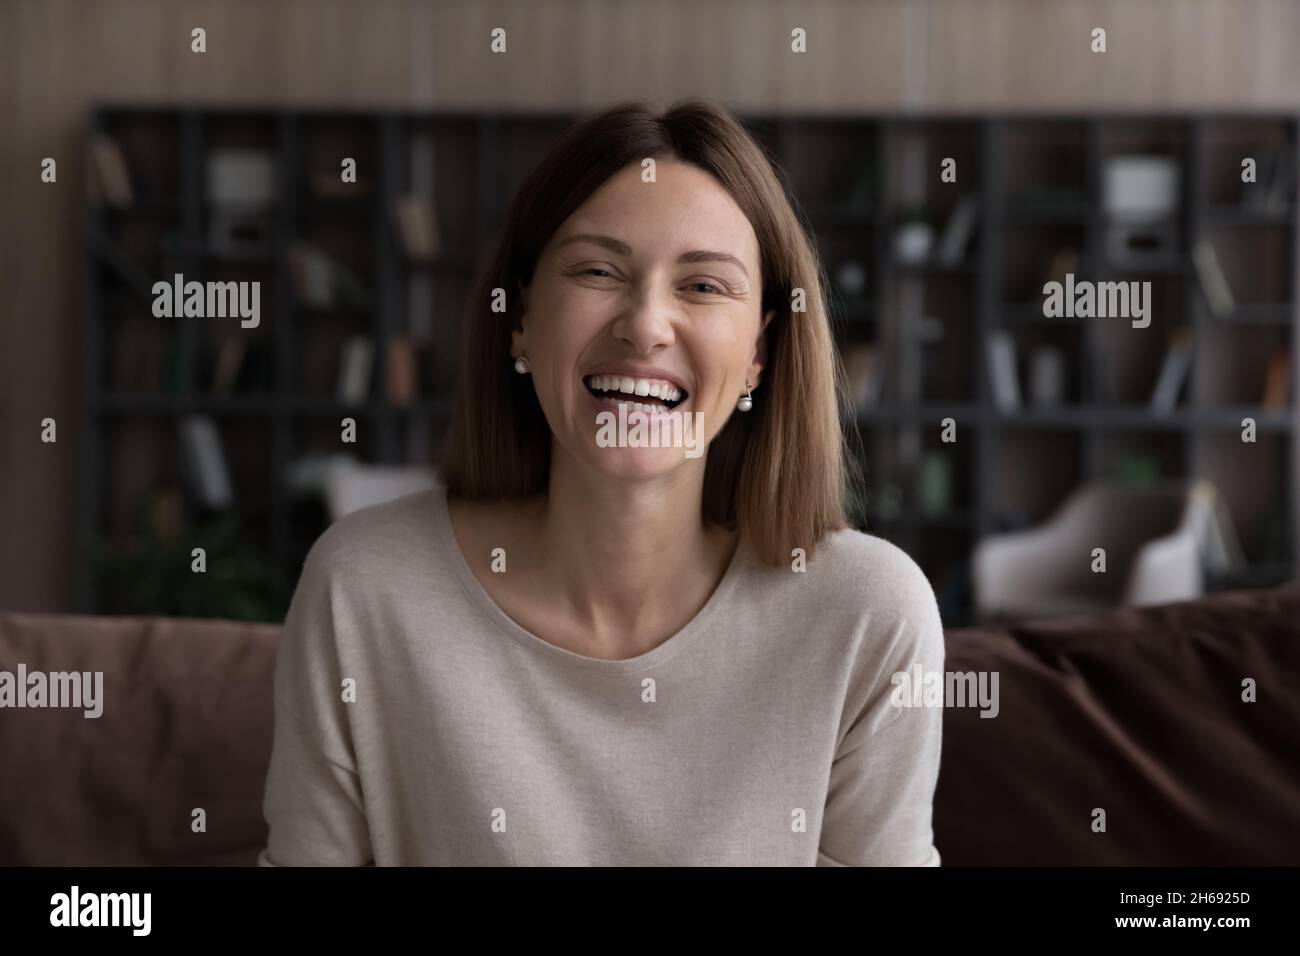 Ritratto della testa di una donna sorridente emozionata che guarda la fotocamera Foto Stock